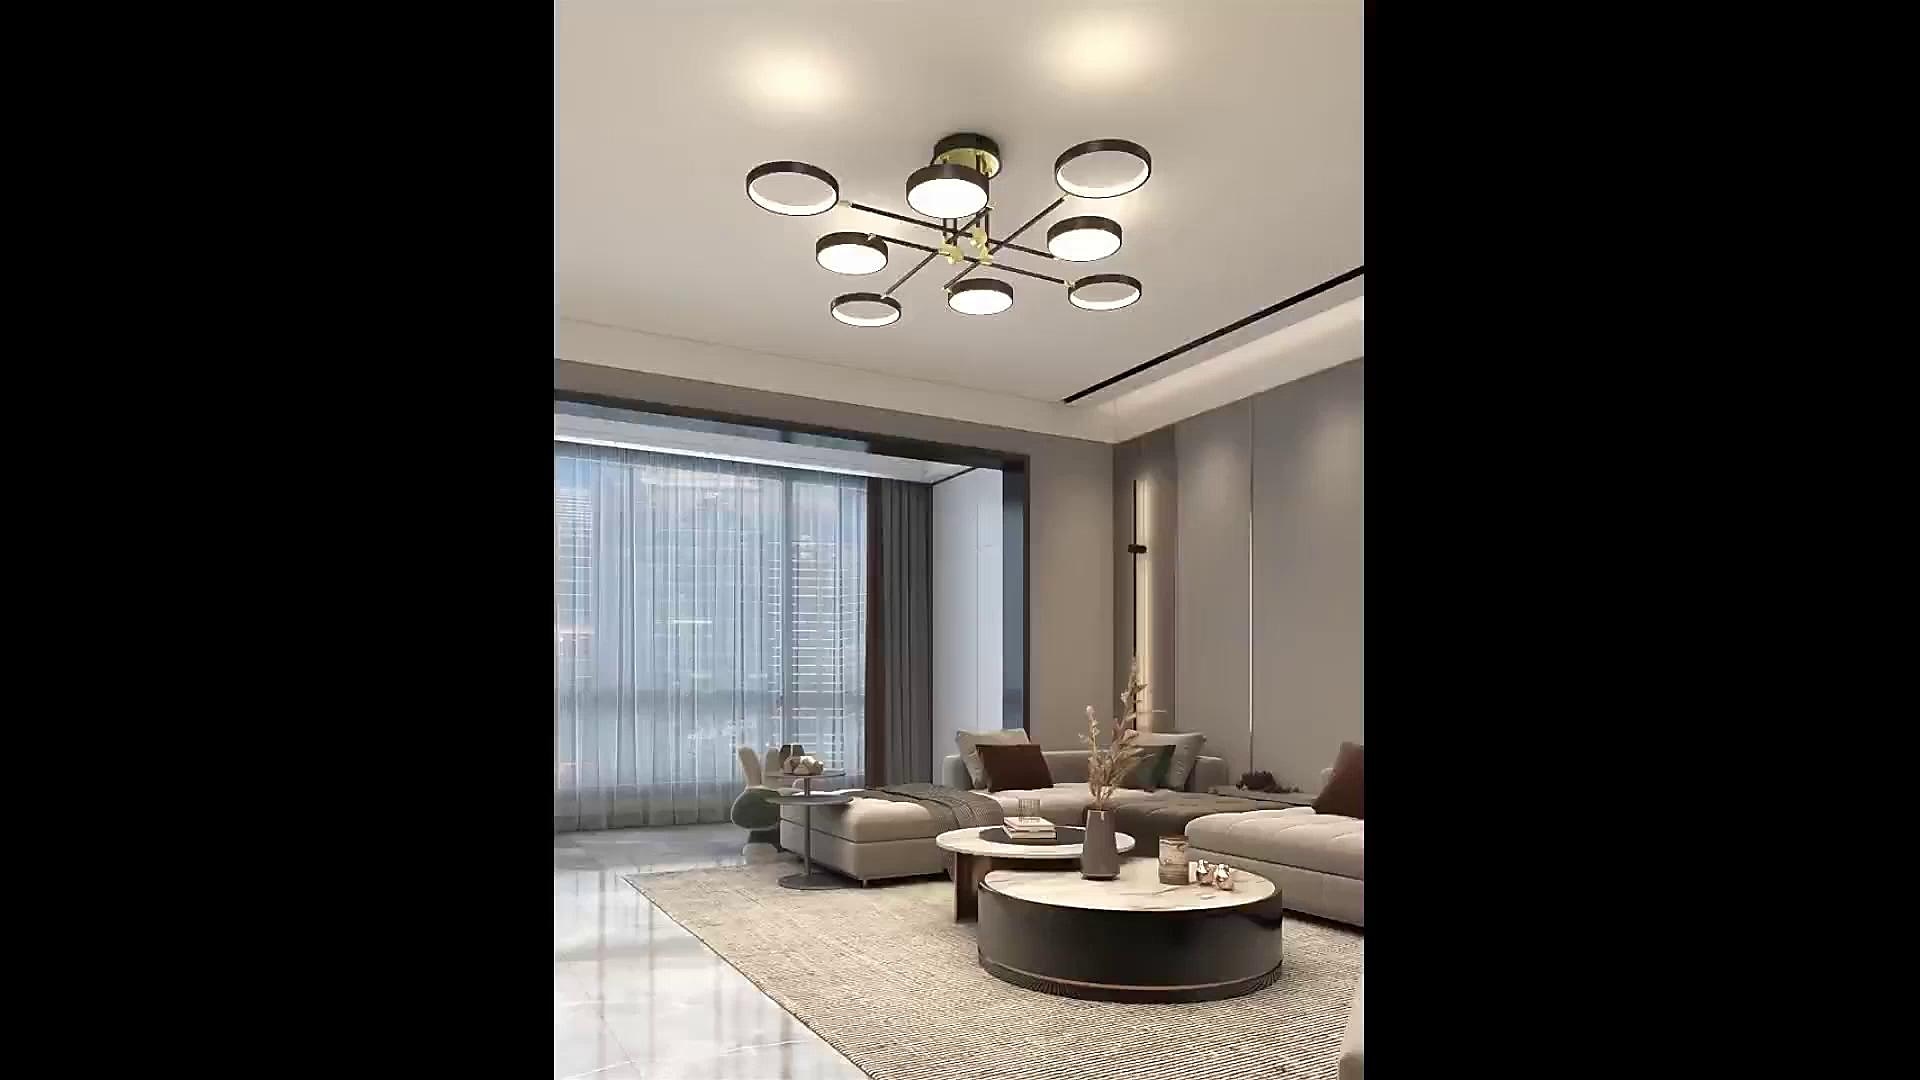 LED Ceiling Light Dimmable Light Modern Black Gold Circle Design 75 cm ...